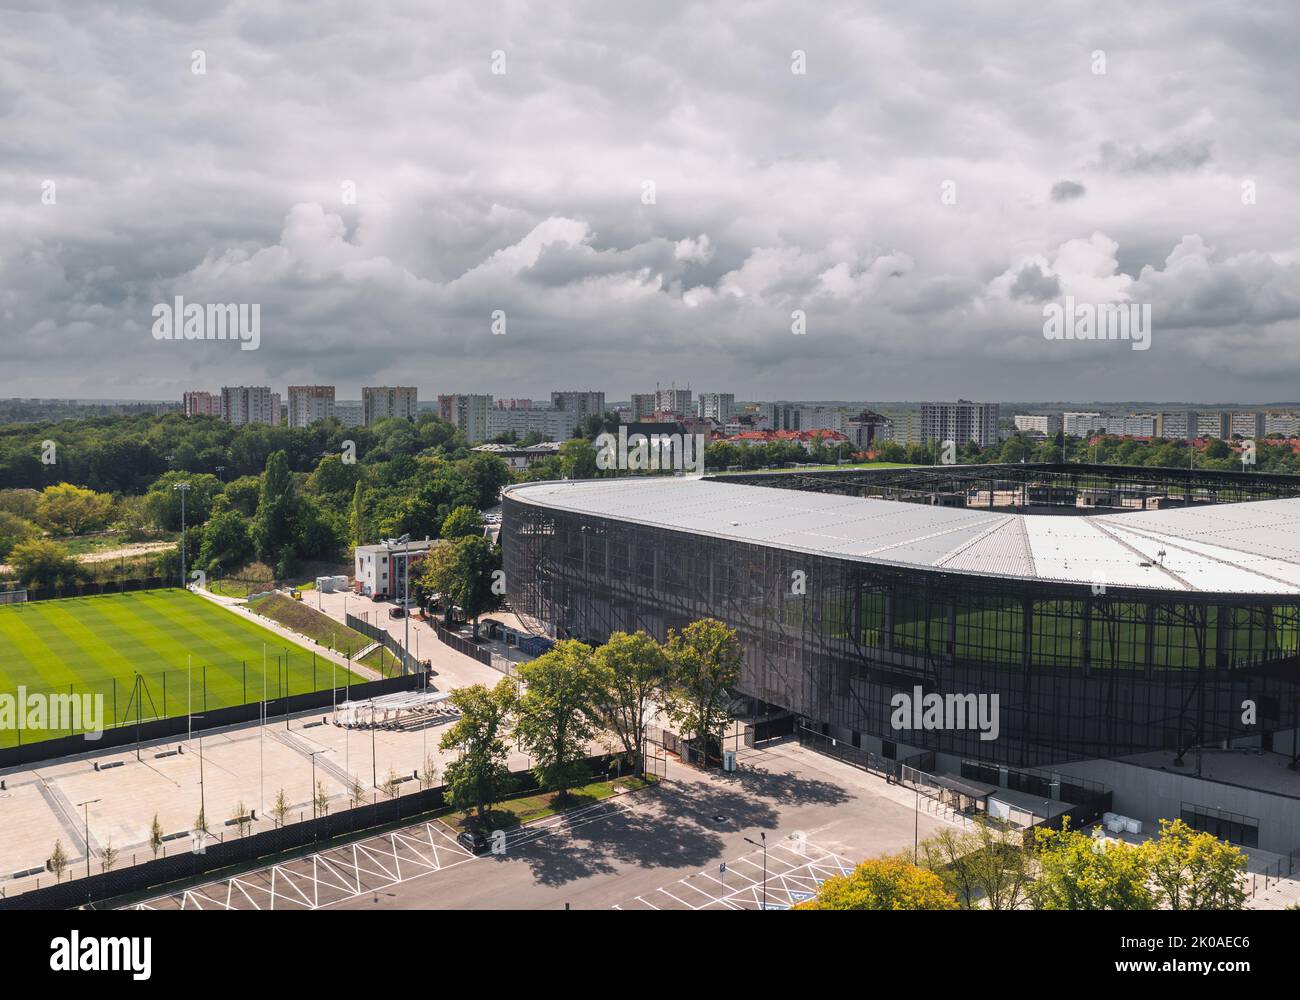 Aerial panoramic summer view over city stadium (Stadion Miejski im. Floriana Krygiera), home ground of Pogoń Szczecin football club. Szczecin, Poland Stock Photo